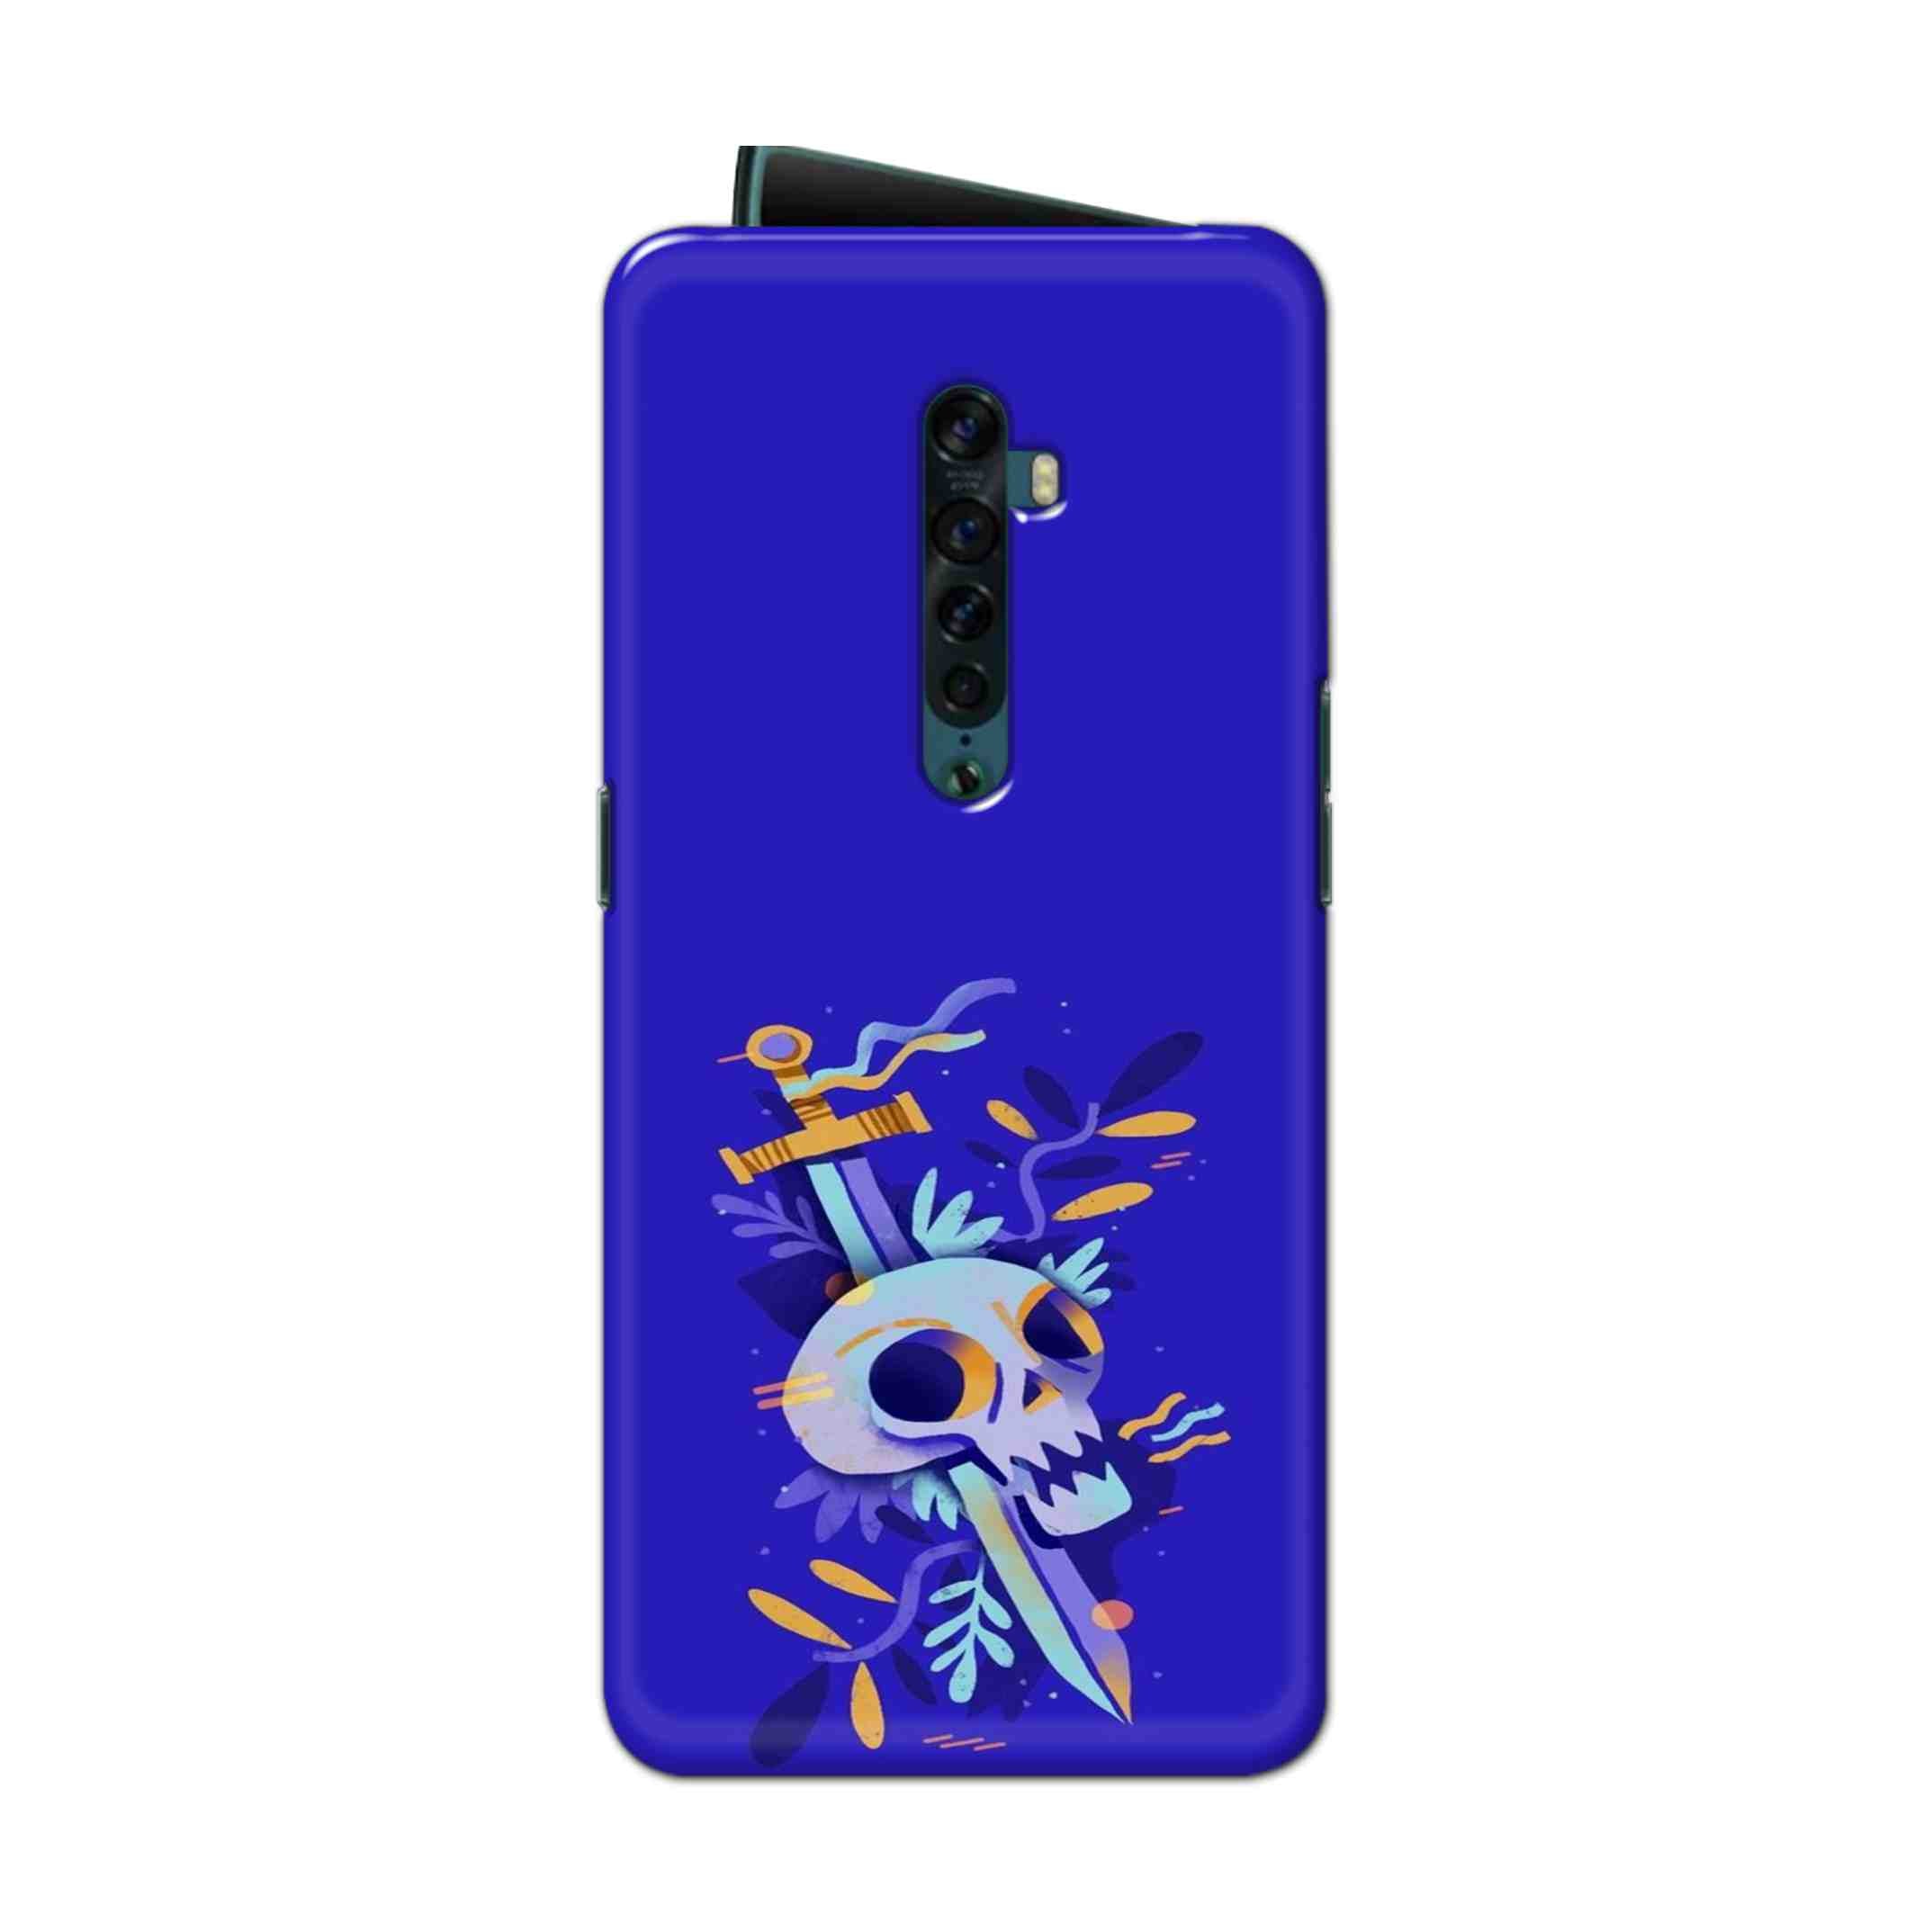 Buy Blue Skull Hard Back Mobile Phone Case Cover For Oppo Reno 2 Online